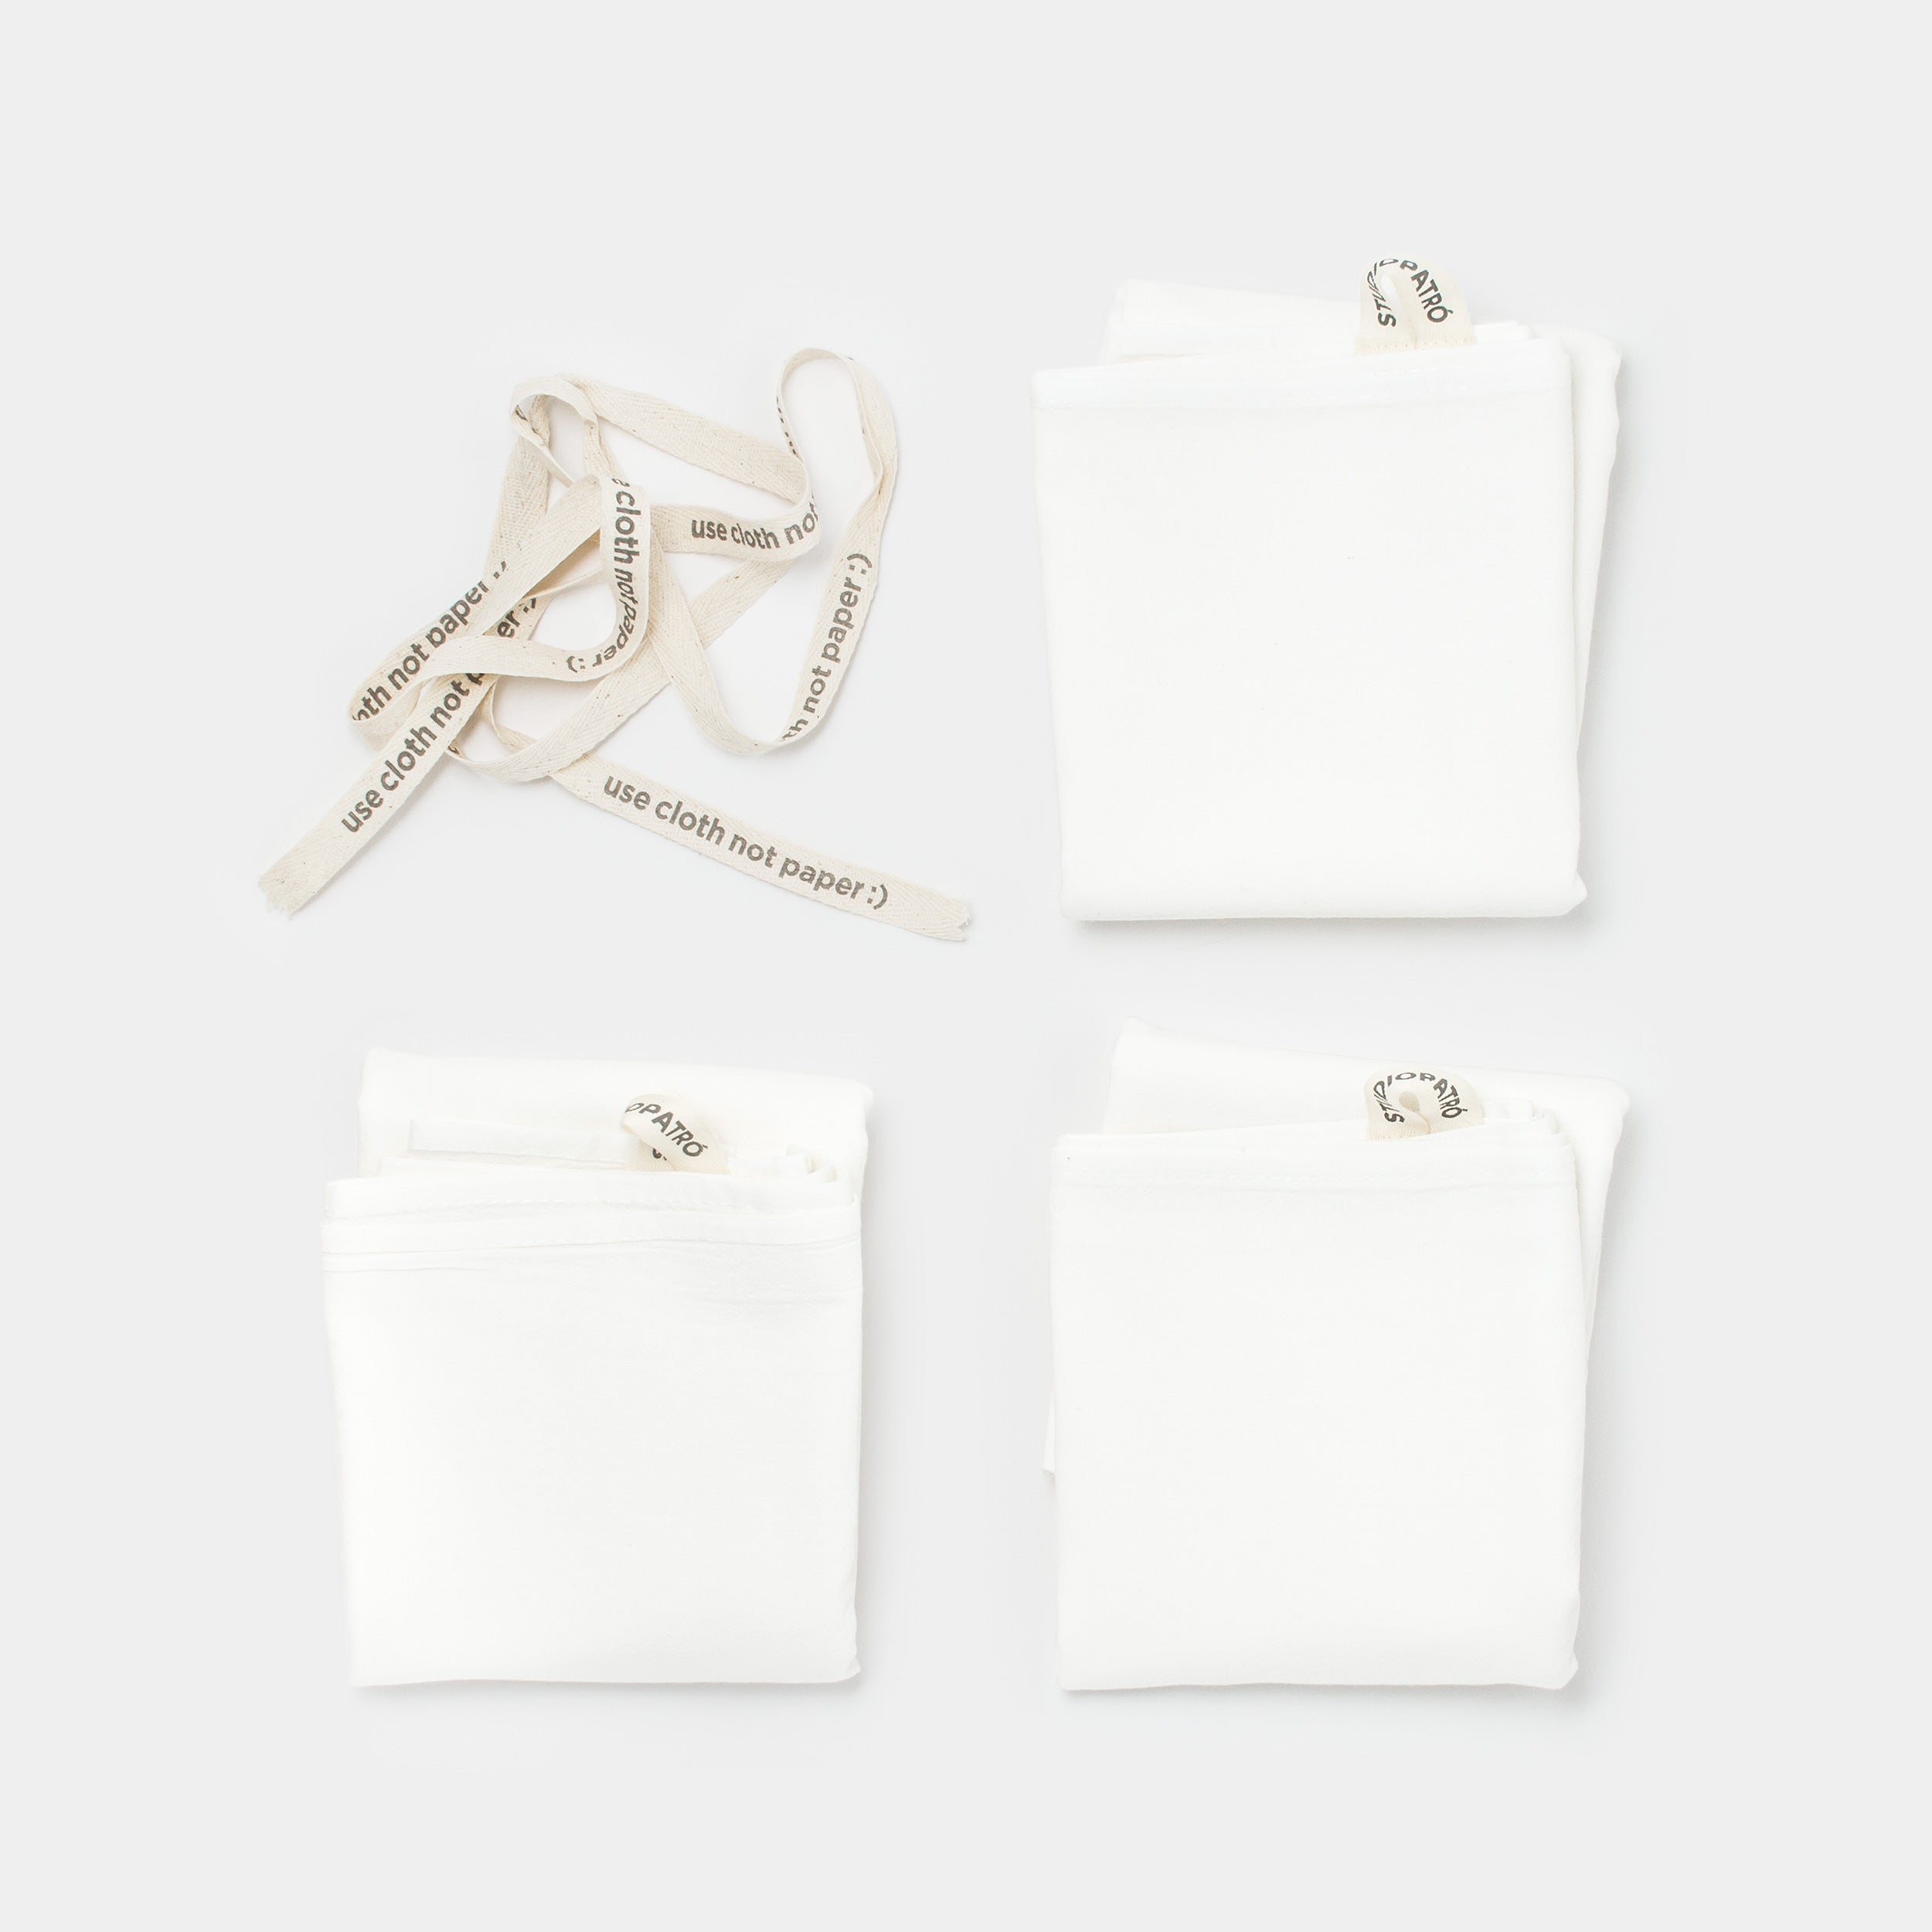 Studiopatro Flour Sack Towels unassembled top